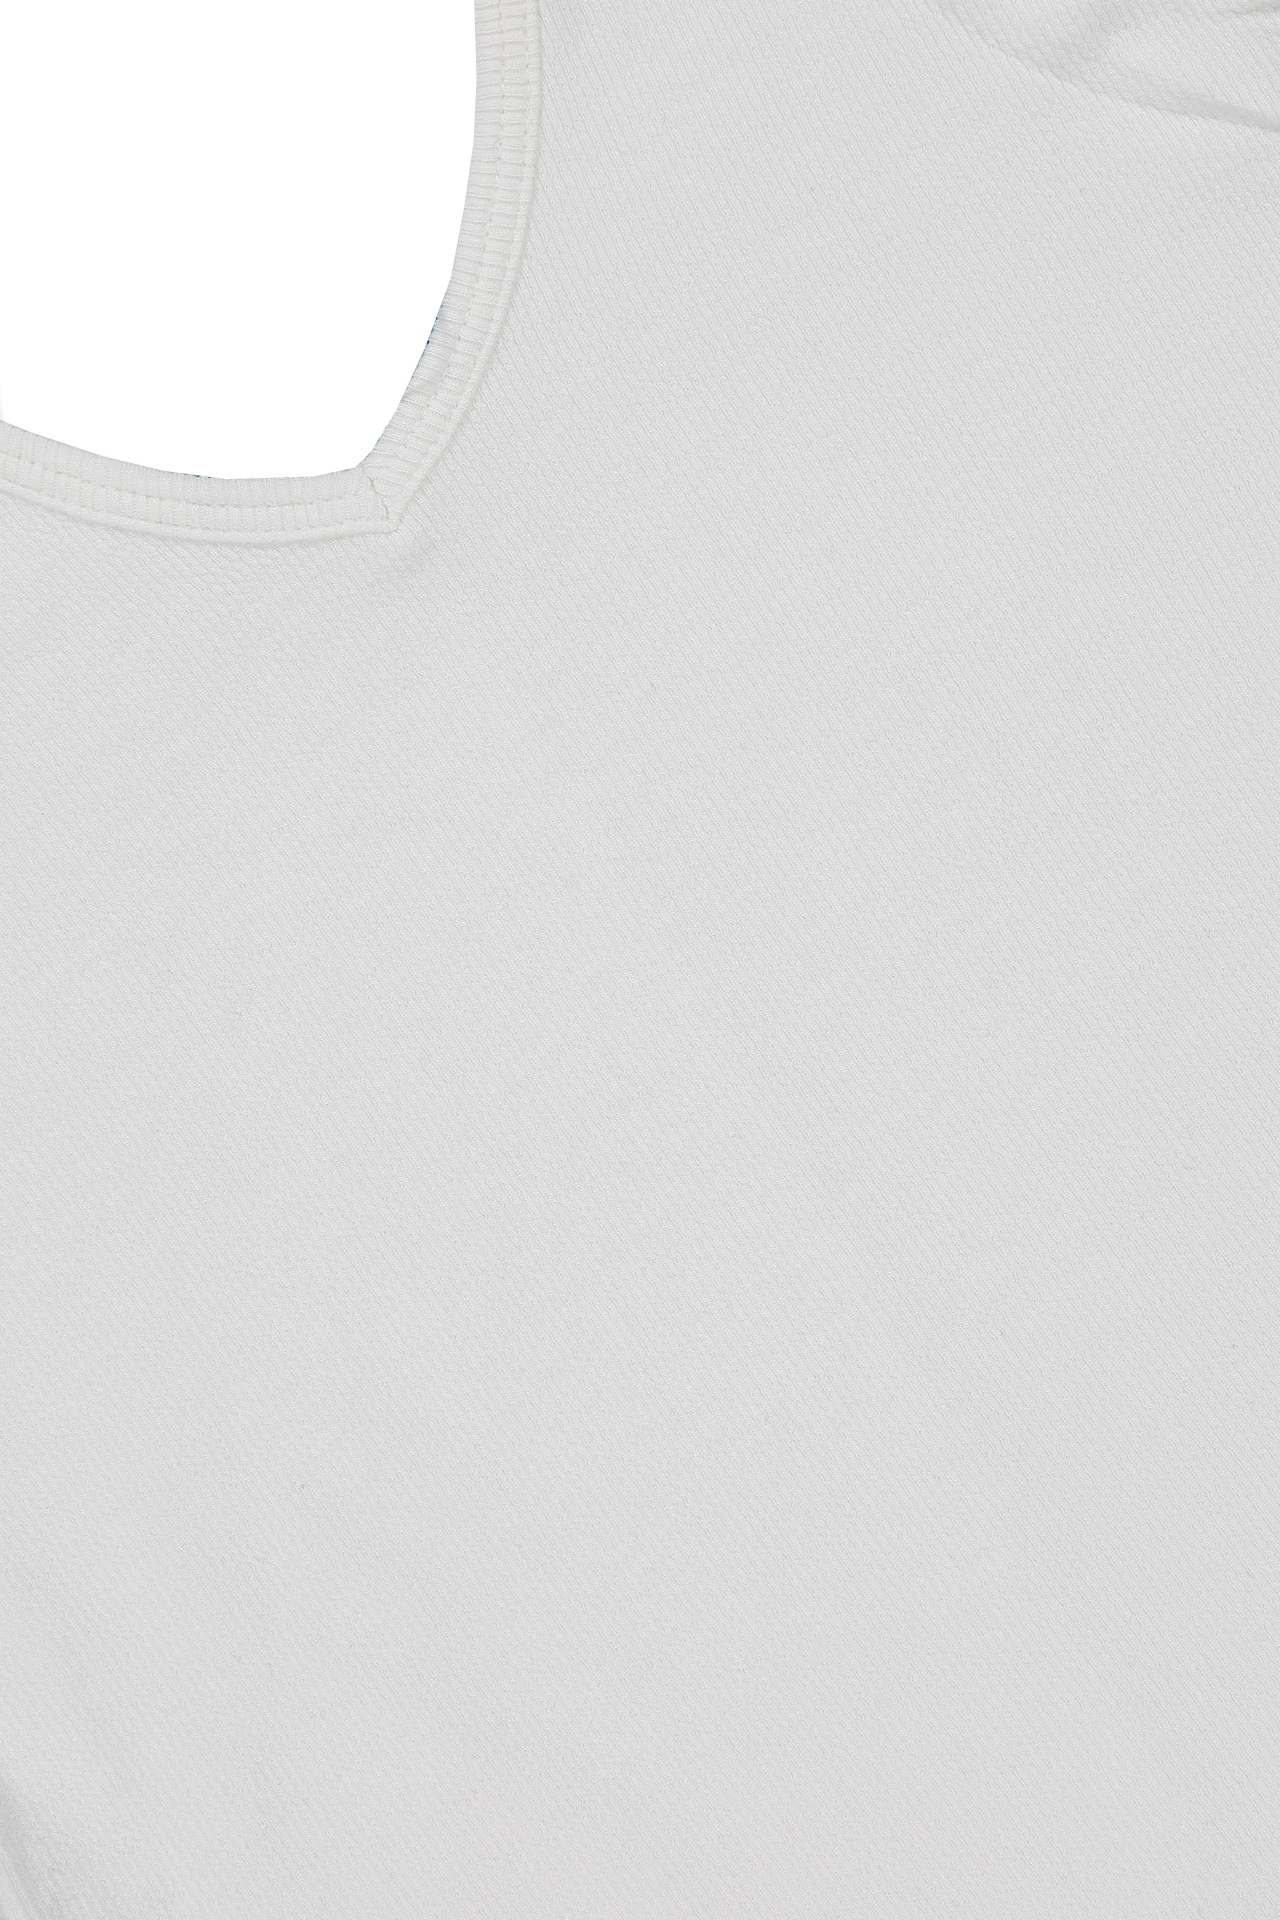 ATM V-Neck Tank Bodysuit White Collar Detail Image (6706401280115)